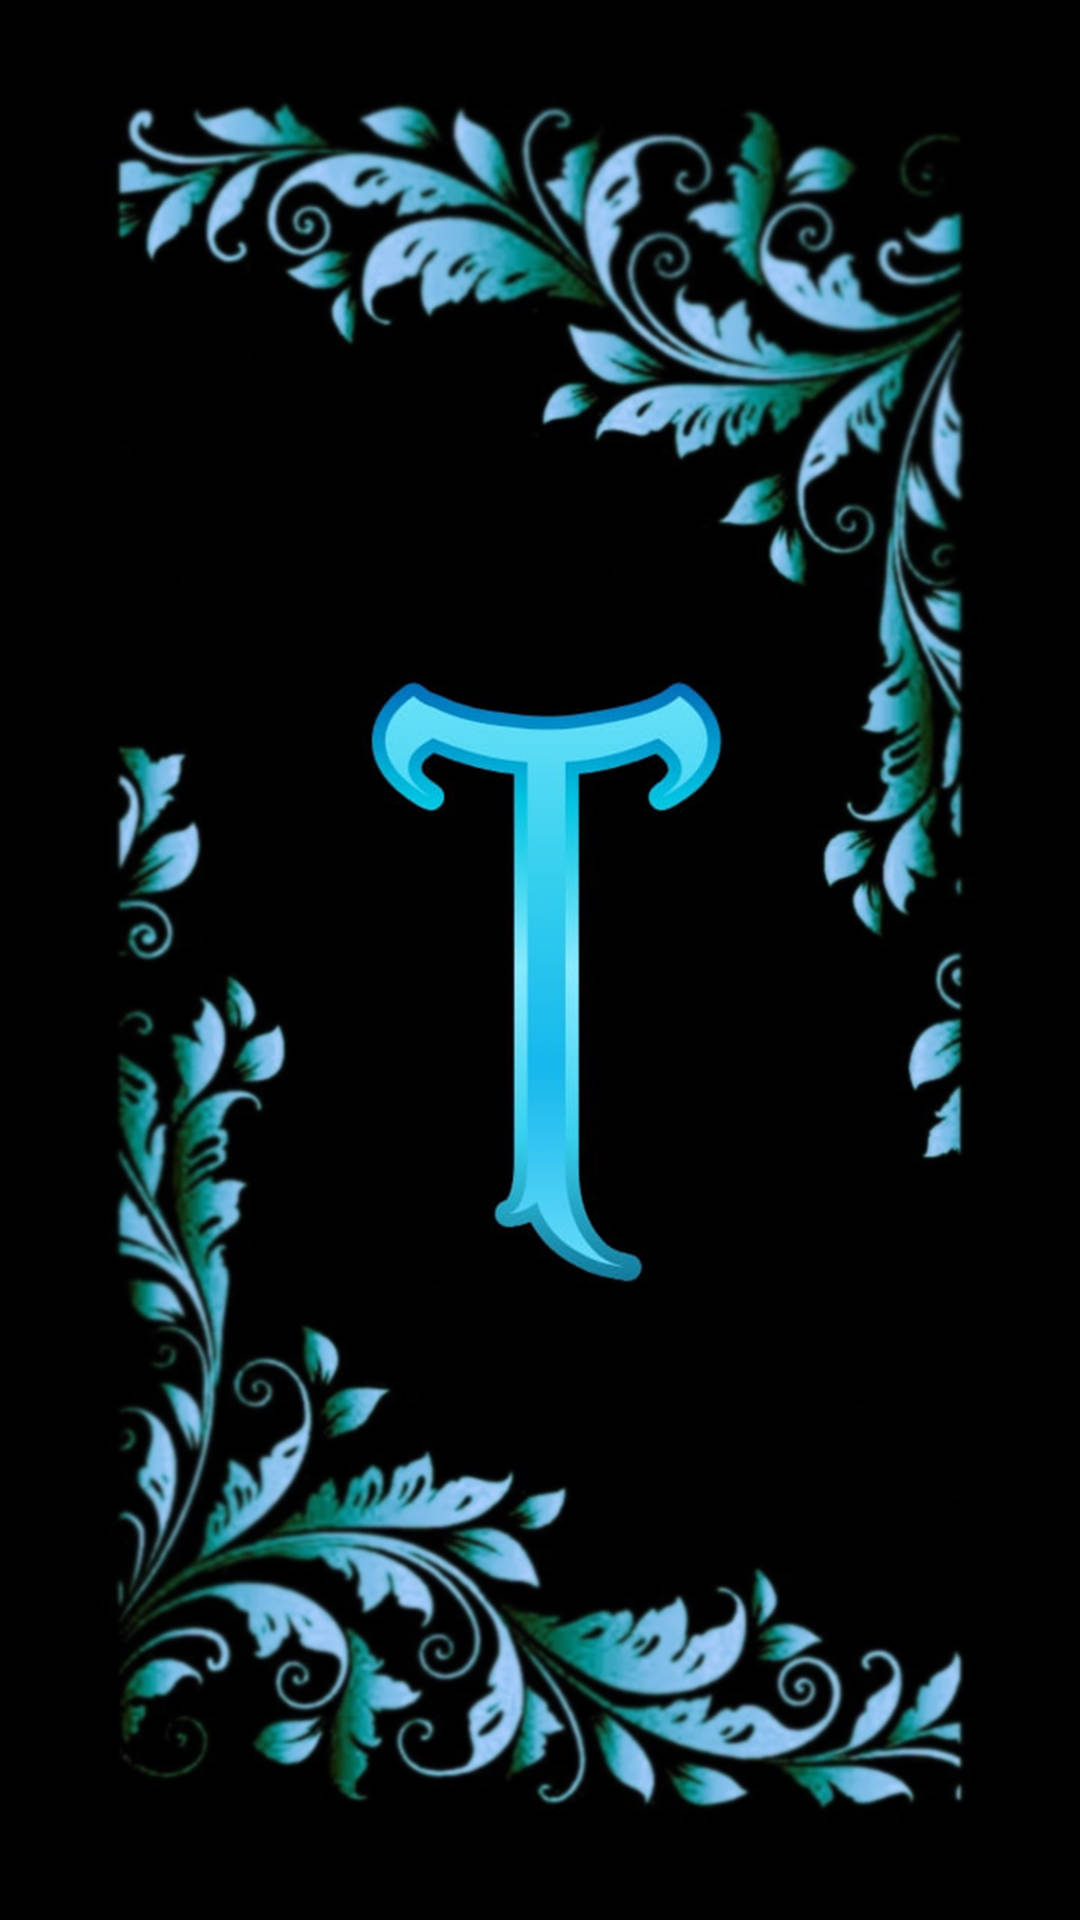 Blue Aesthetic Letter T Design Wallpaper